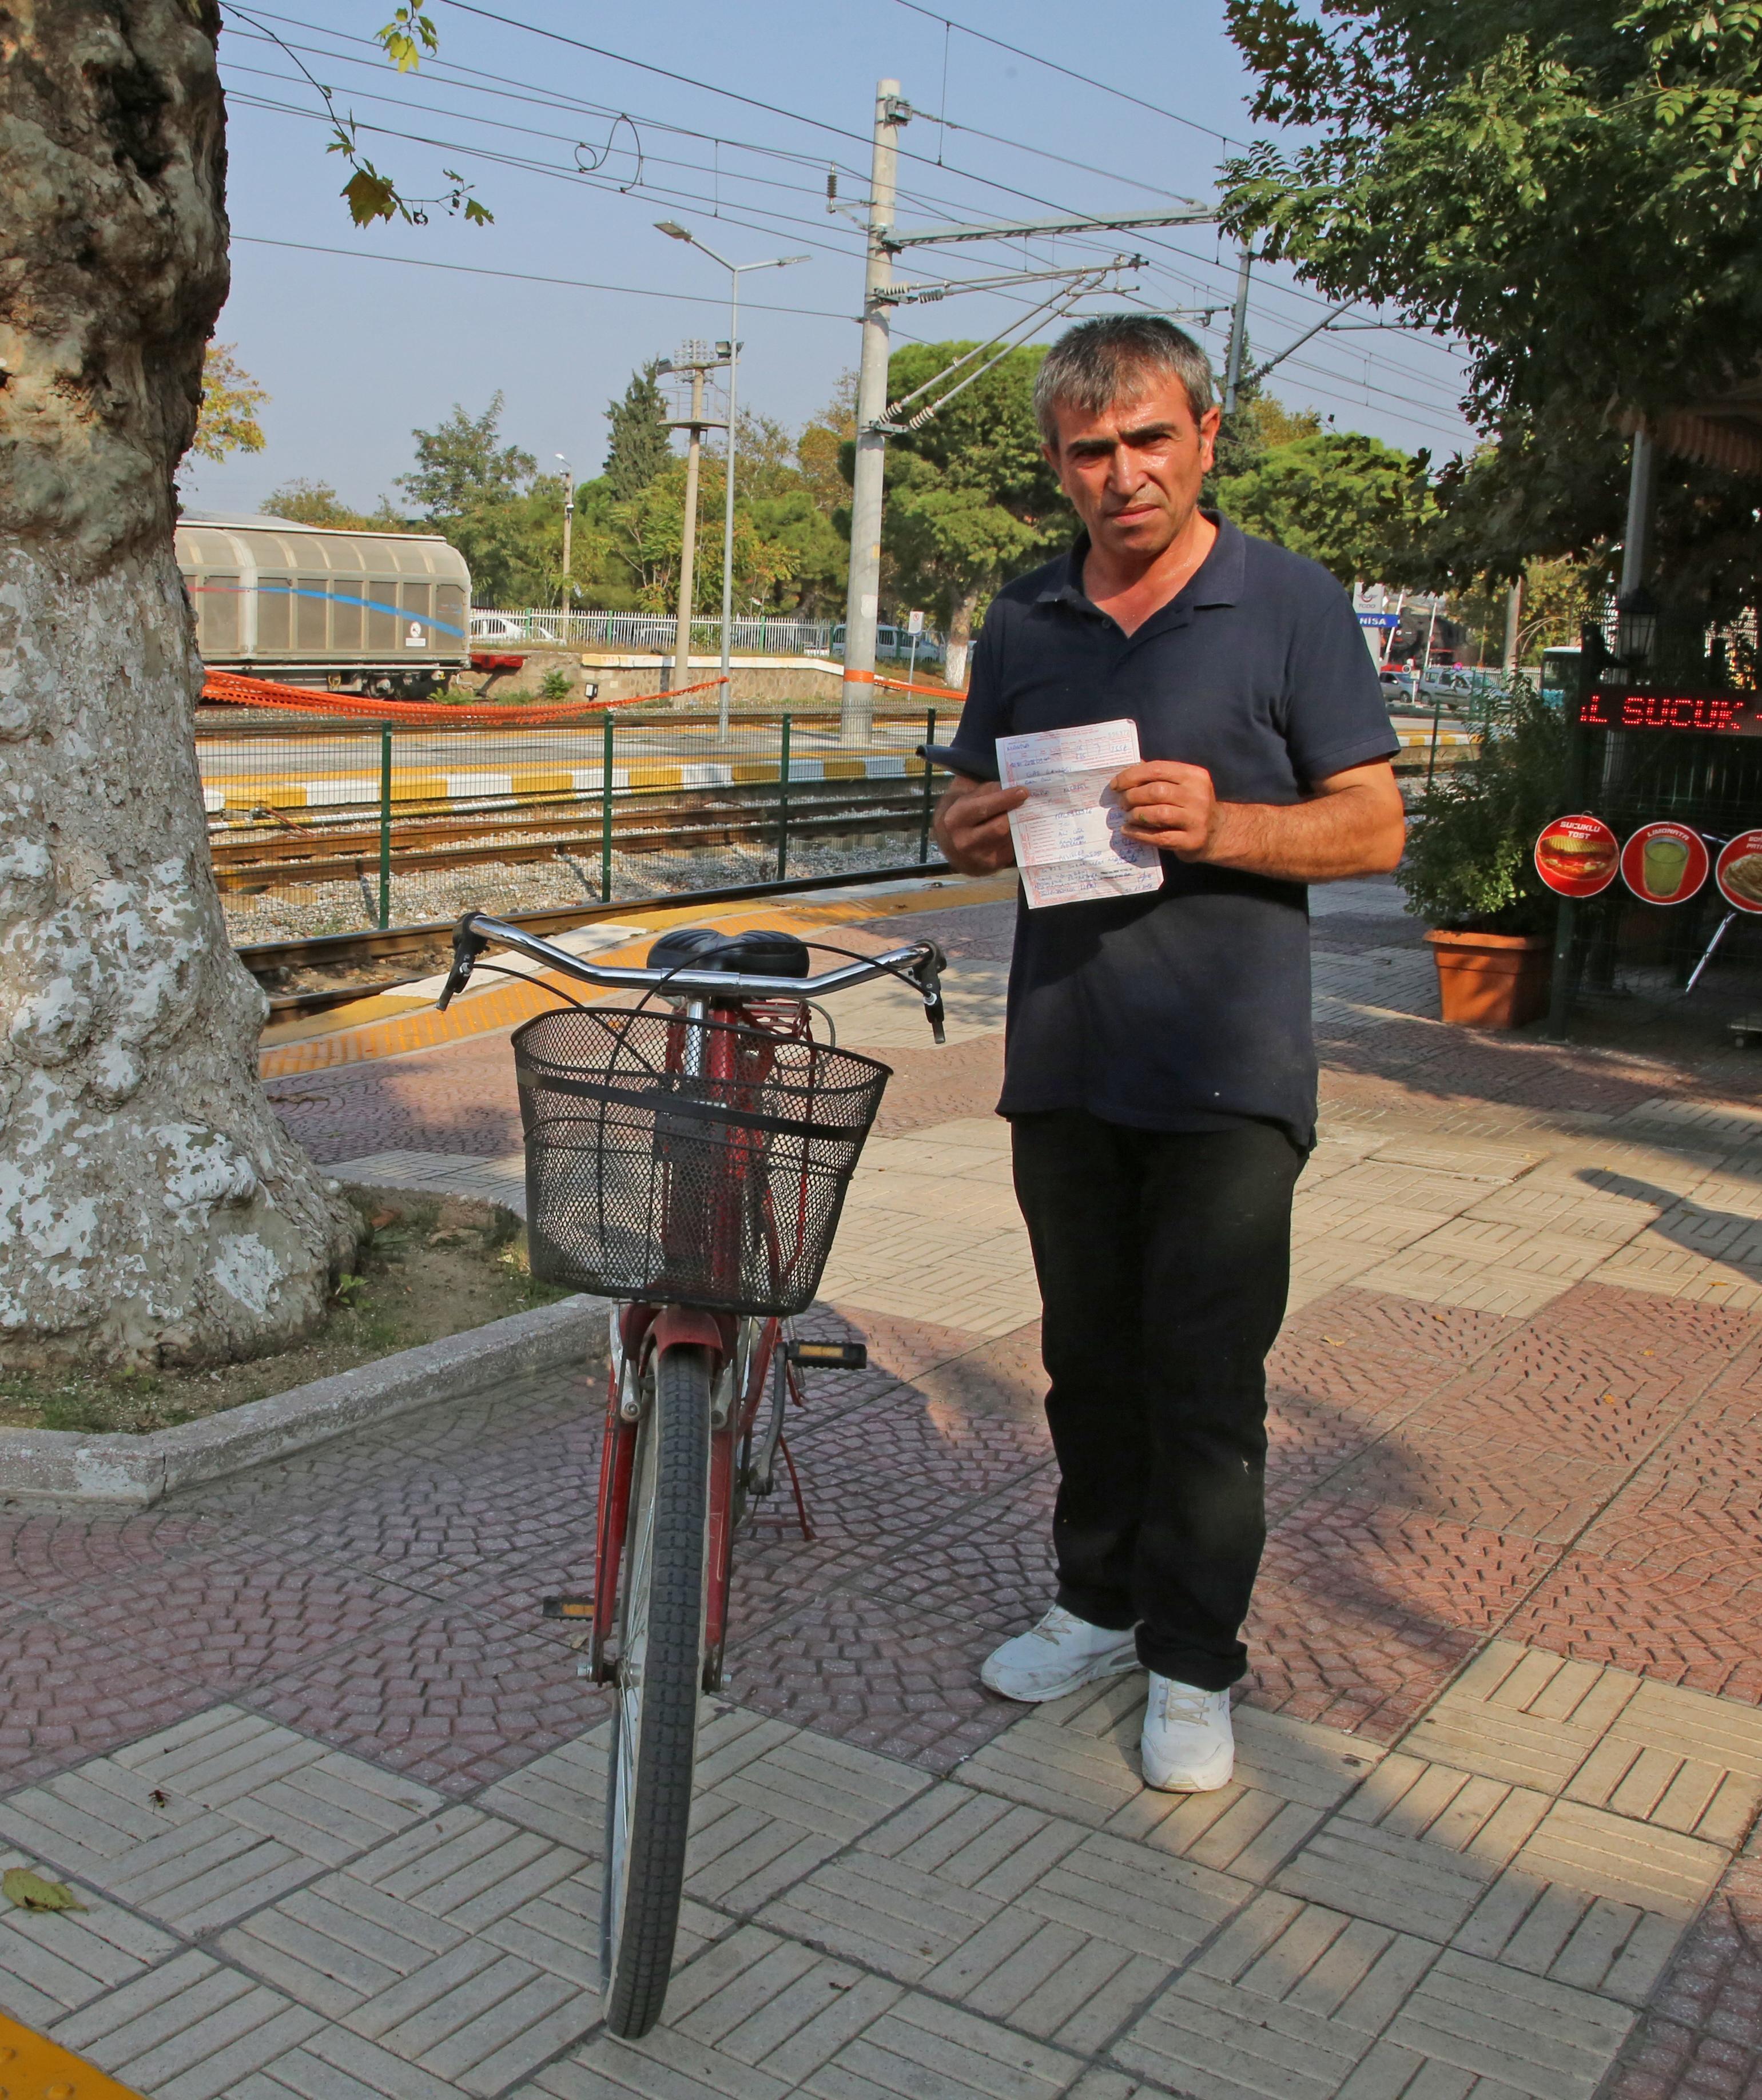 Bisikletle kaldırımdan giden sürücüye 235 lira ceza